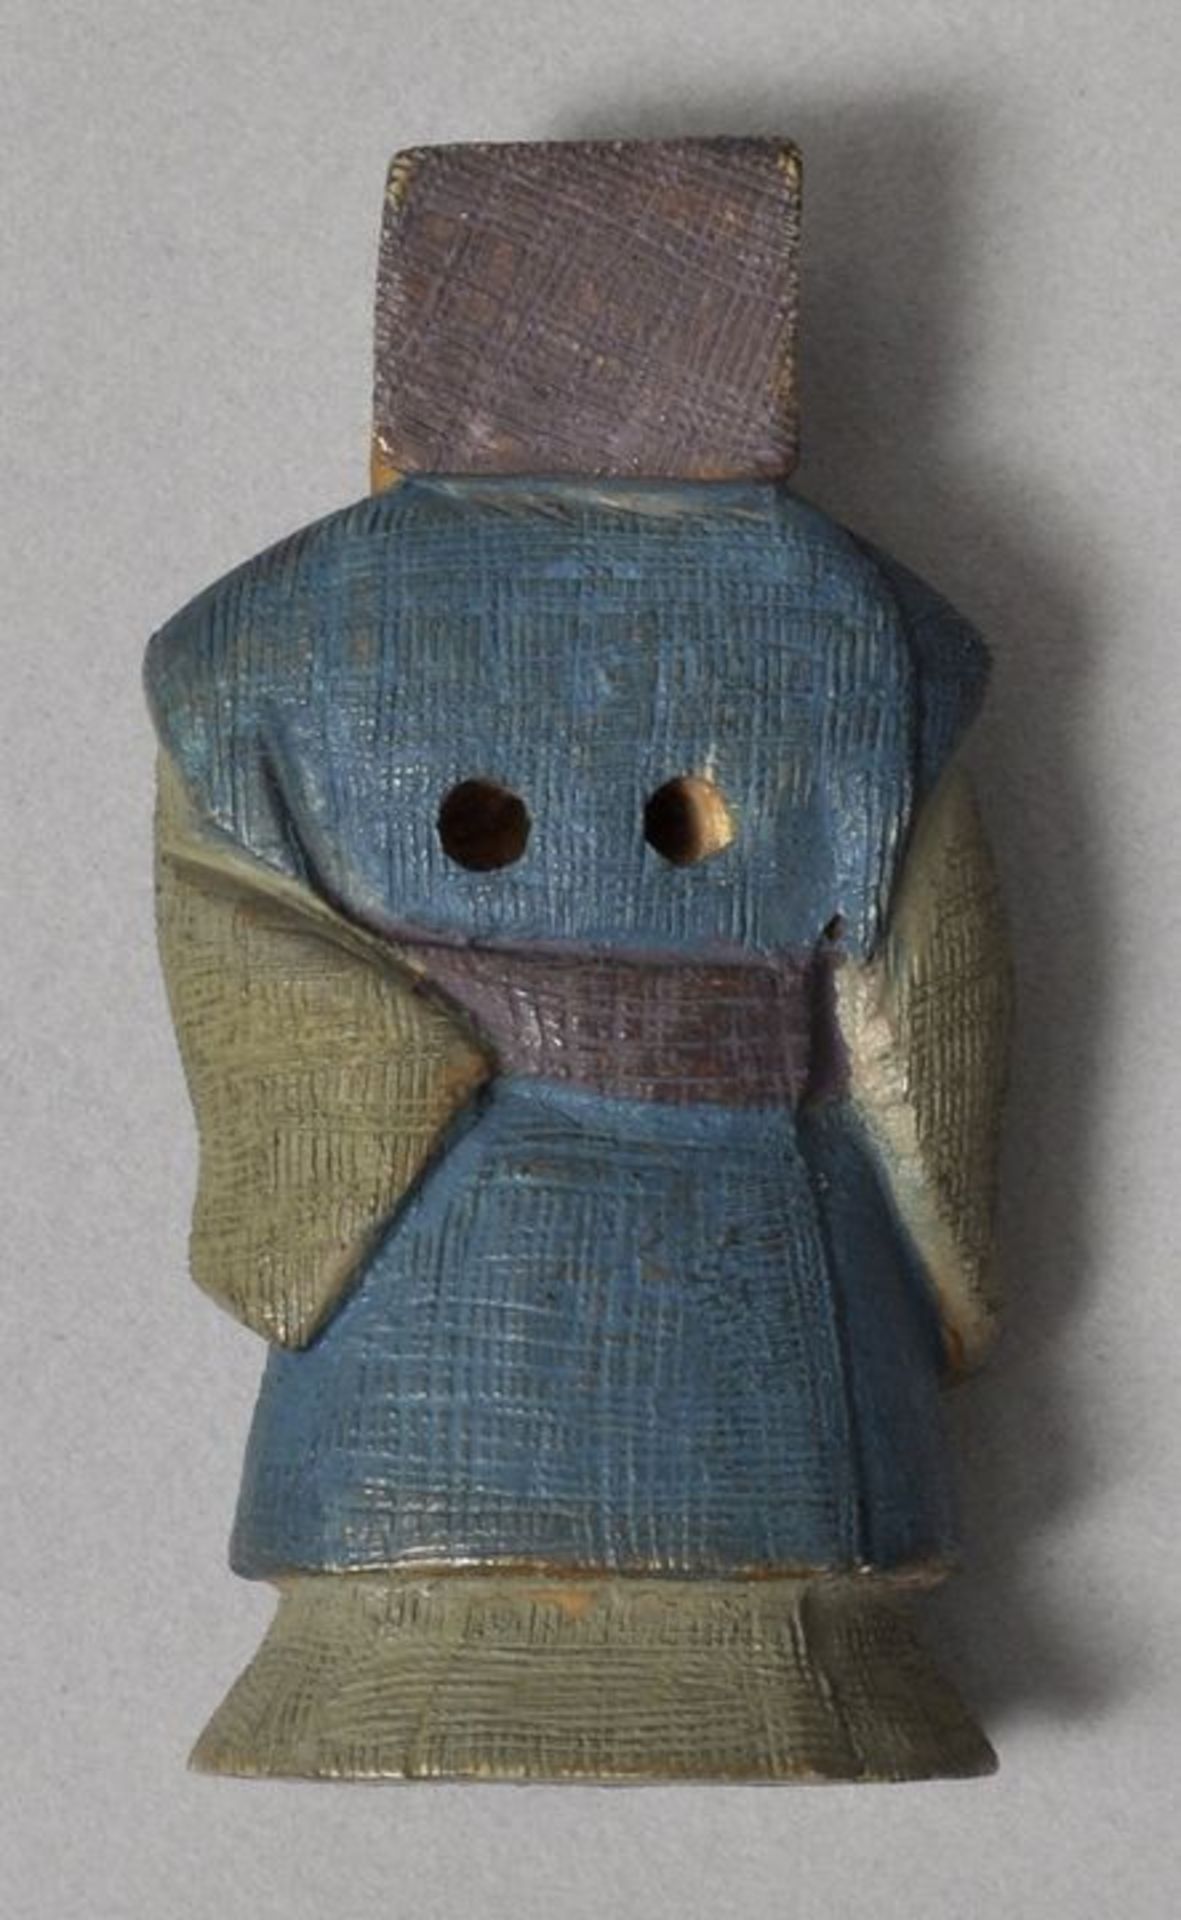 Netsuke, Japan, wohl Anf. 20. Jh.Elfenbein, geschnitzt, farbig gefasst. Gelehrter. H. 49 mm - Bild 2 aus 2